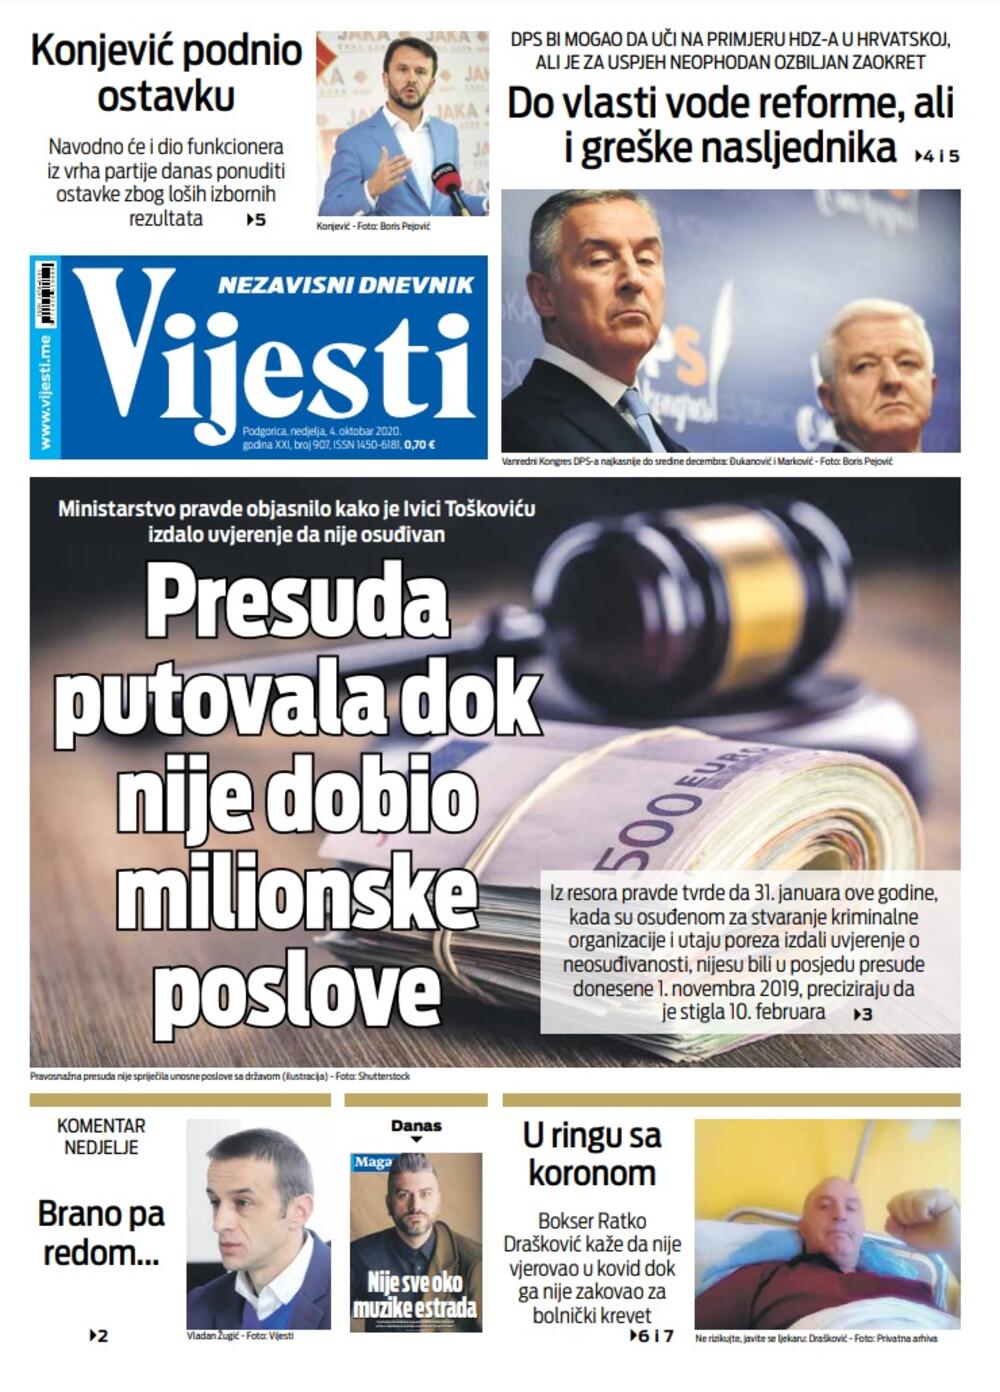 Naslovna strana "Vijesti" za 4. oktobar 2020., Foto: Vijesti